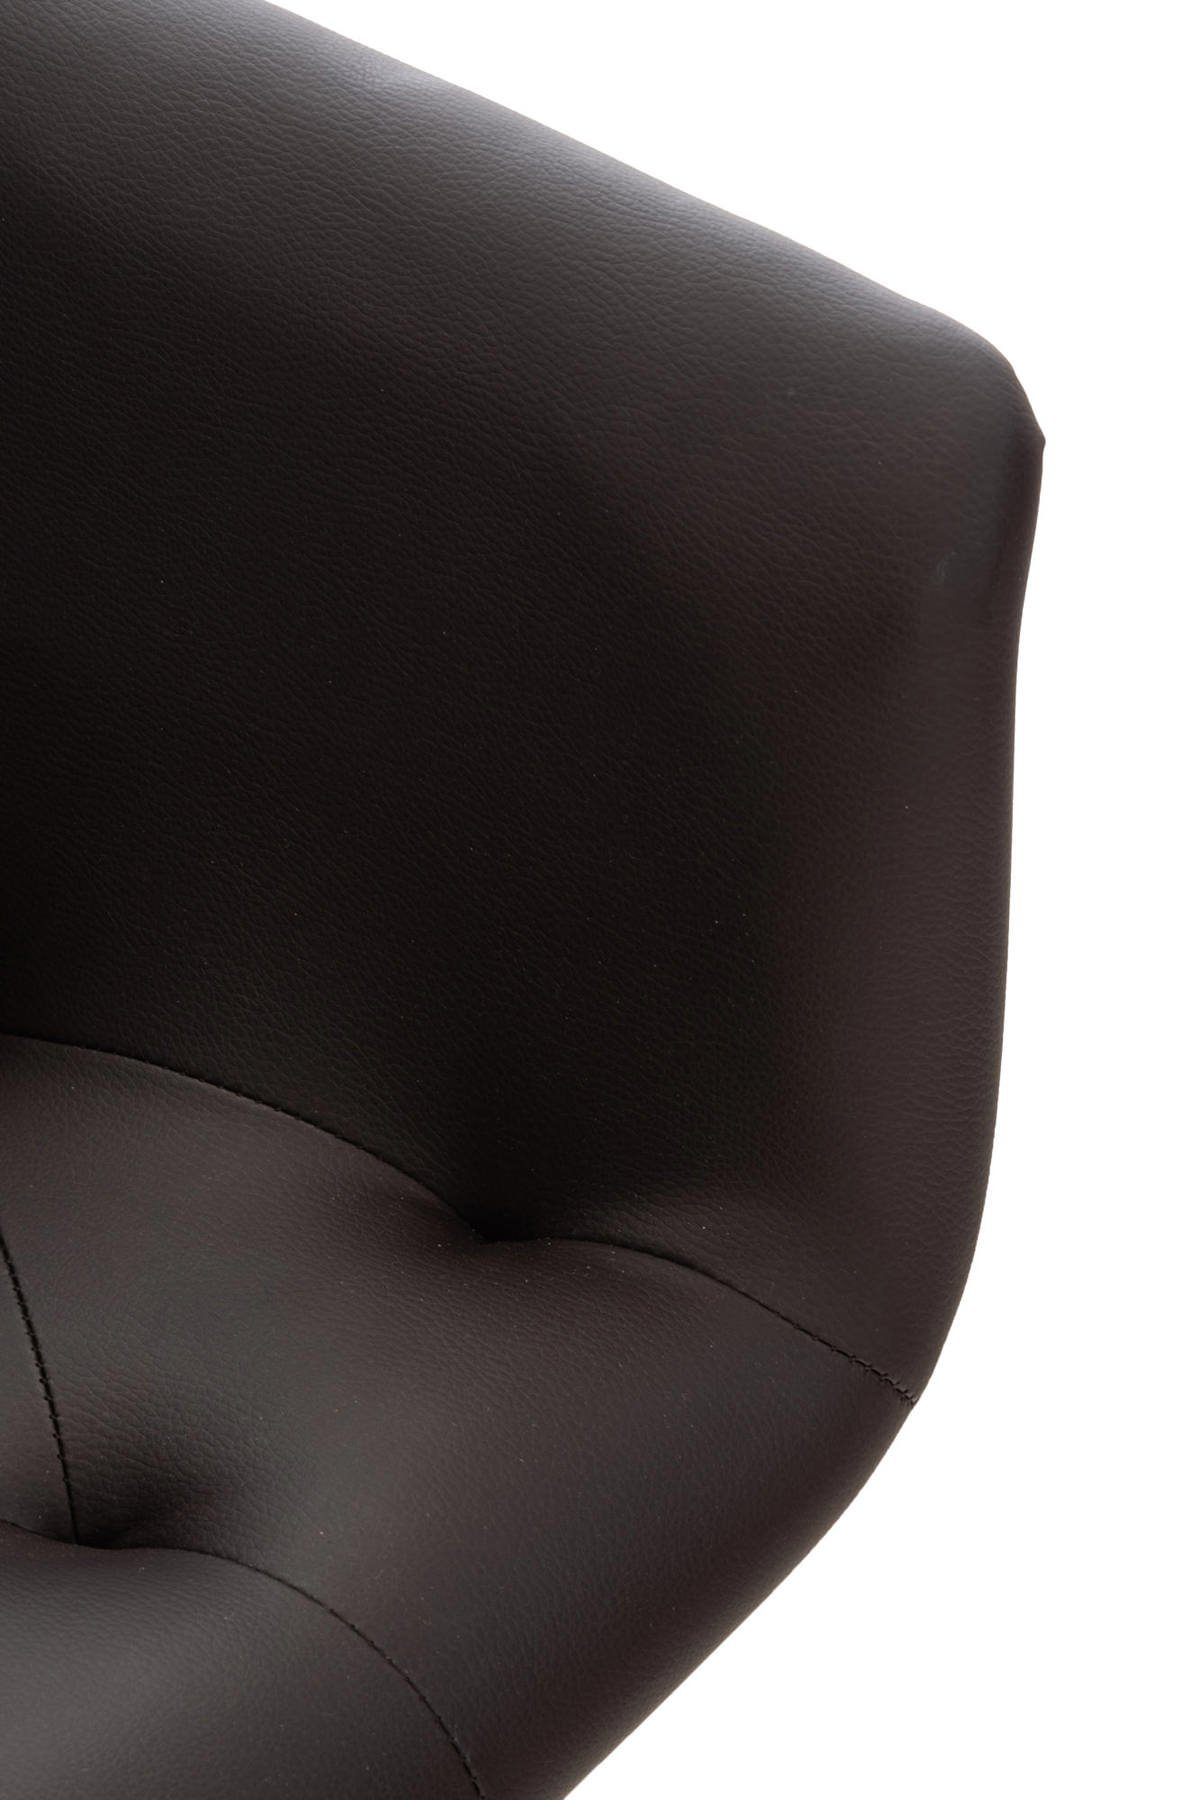 Gestell: Sitzfläche: hochwertig gepolsterter Sitzfläche Esstischstuhl Esszimmerstuhl schwarz TPFLiving Lamfol (Küchenstuhl Konferenzstuhl braun Metall mit Kunstleder - - Wohnzimmerstuhl), - -